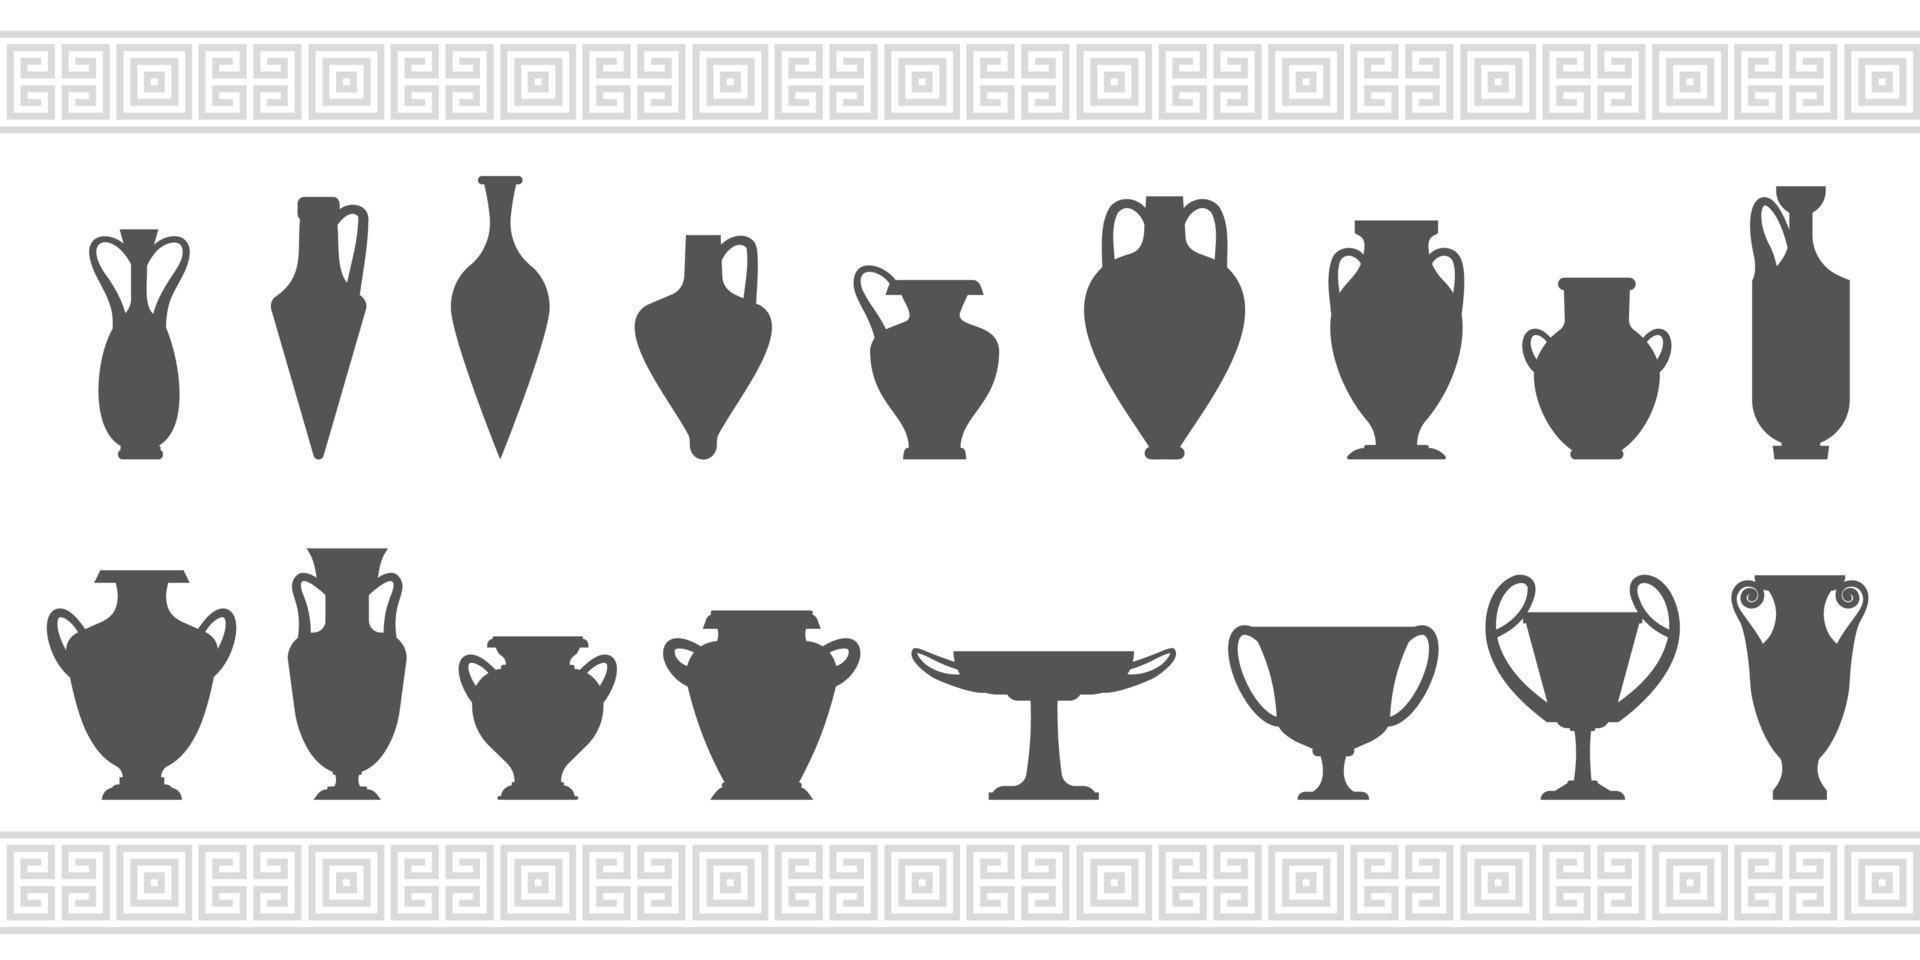 siluetas de jarrones griegos. ánforas antiguas e ilustraciones de glifos de ollas. loza de barro cerámico. vector. vector